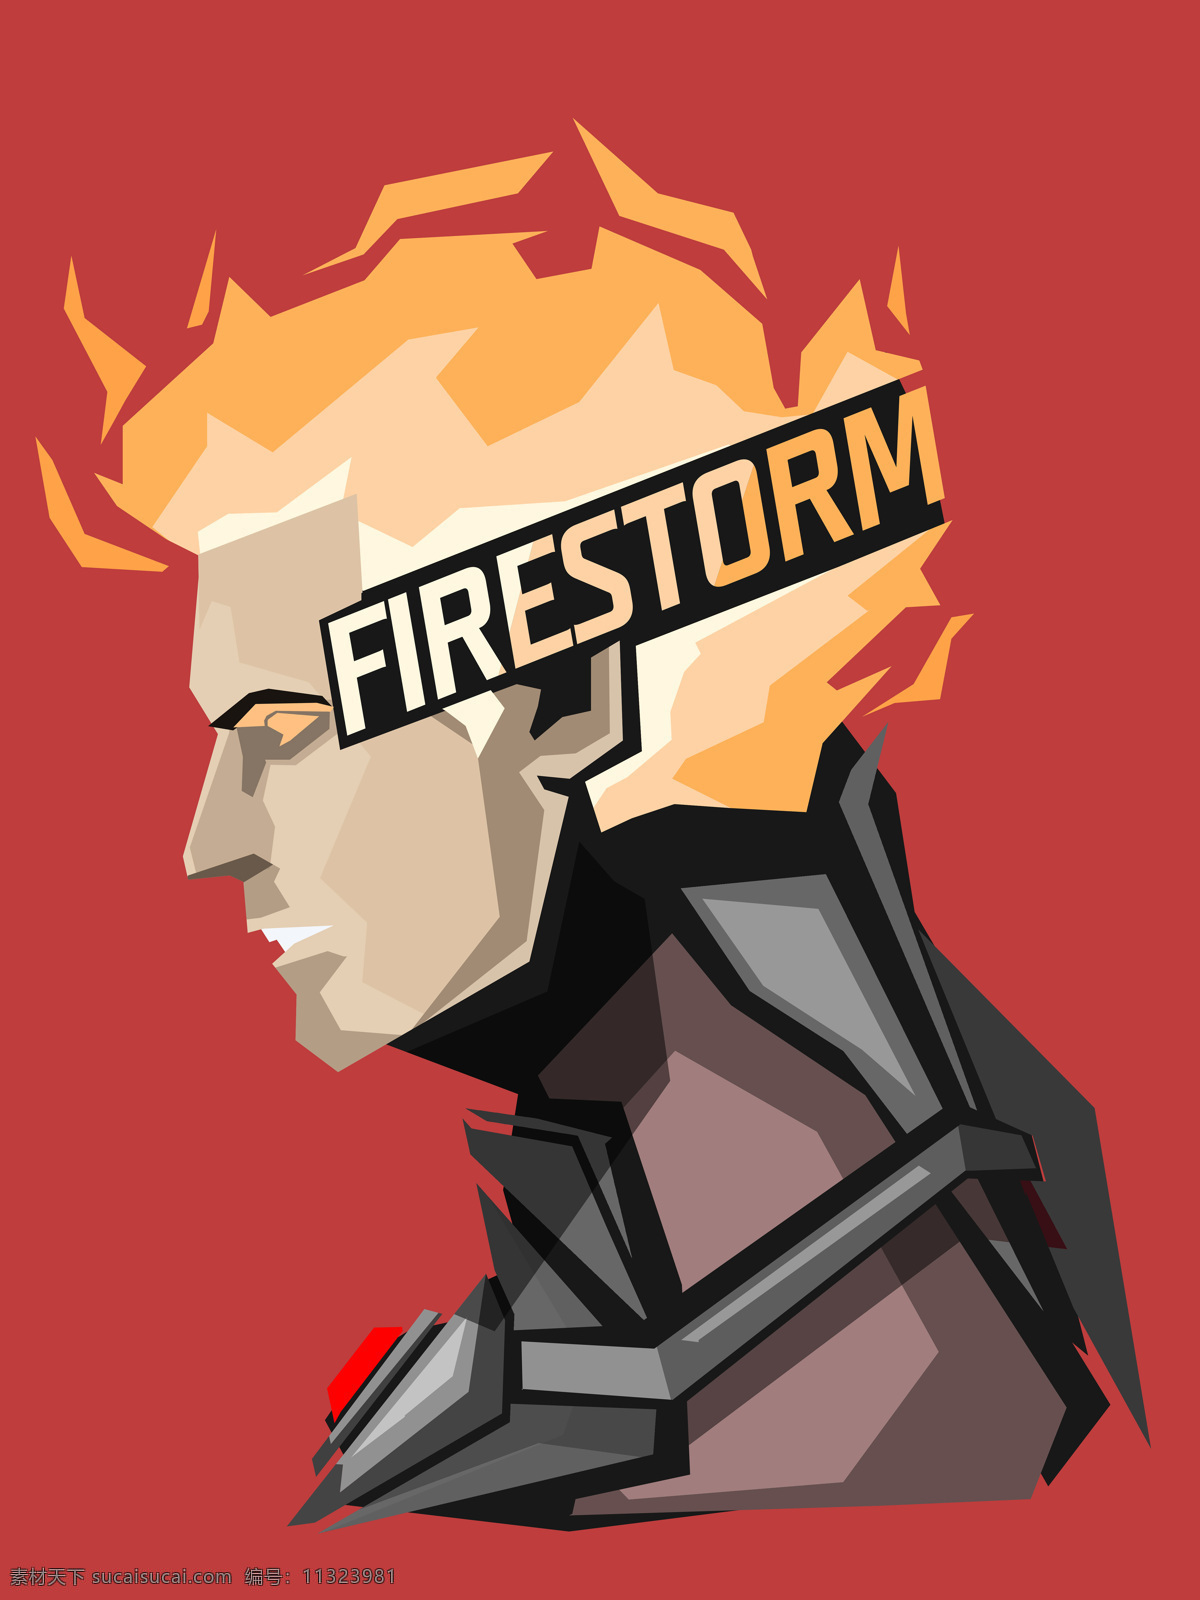 明日 传奇 火 风暴 明日传奇 火风暴 firestorm dc 超级英雄 漫画英雄 装饰画 高清素材 文化艺术 影视娱乐